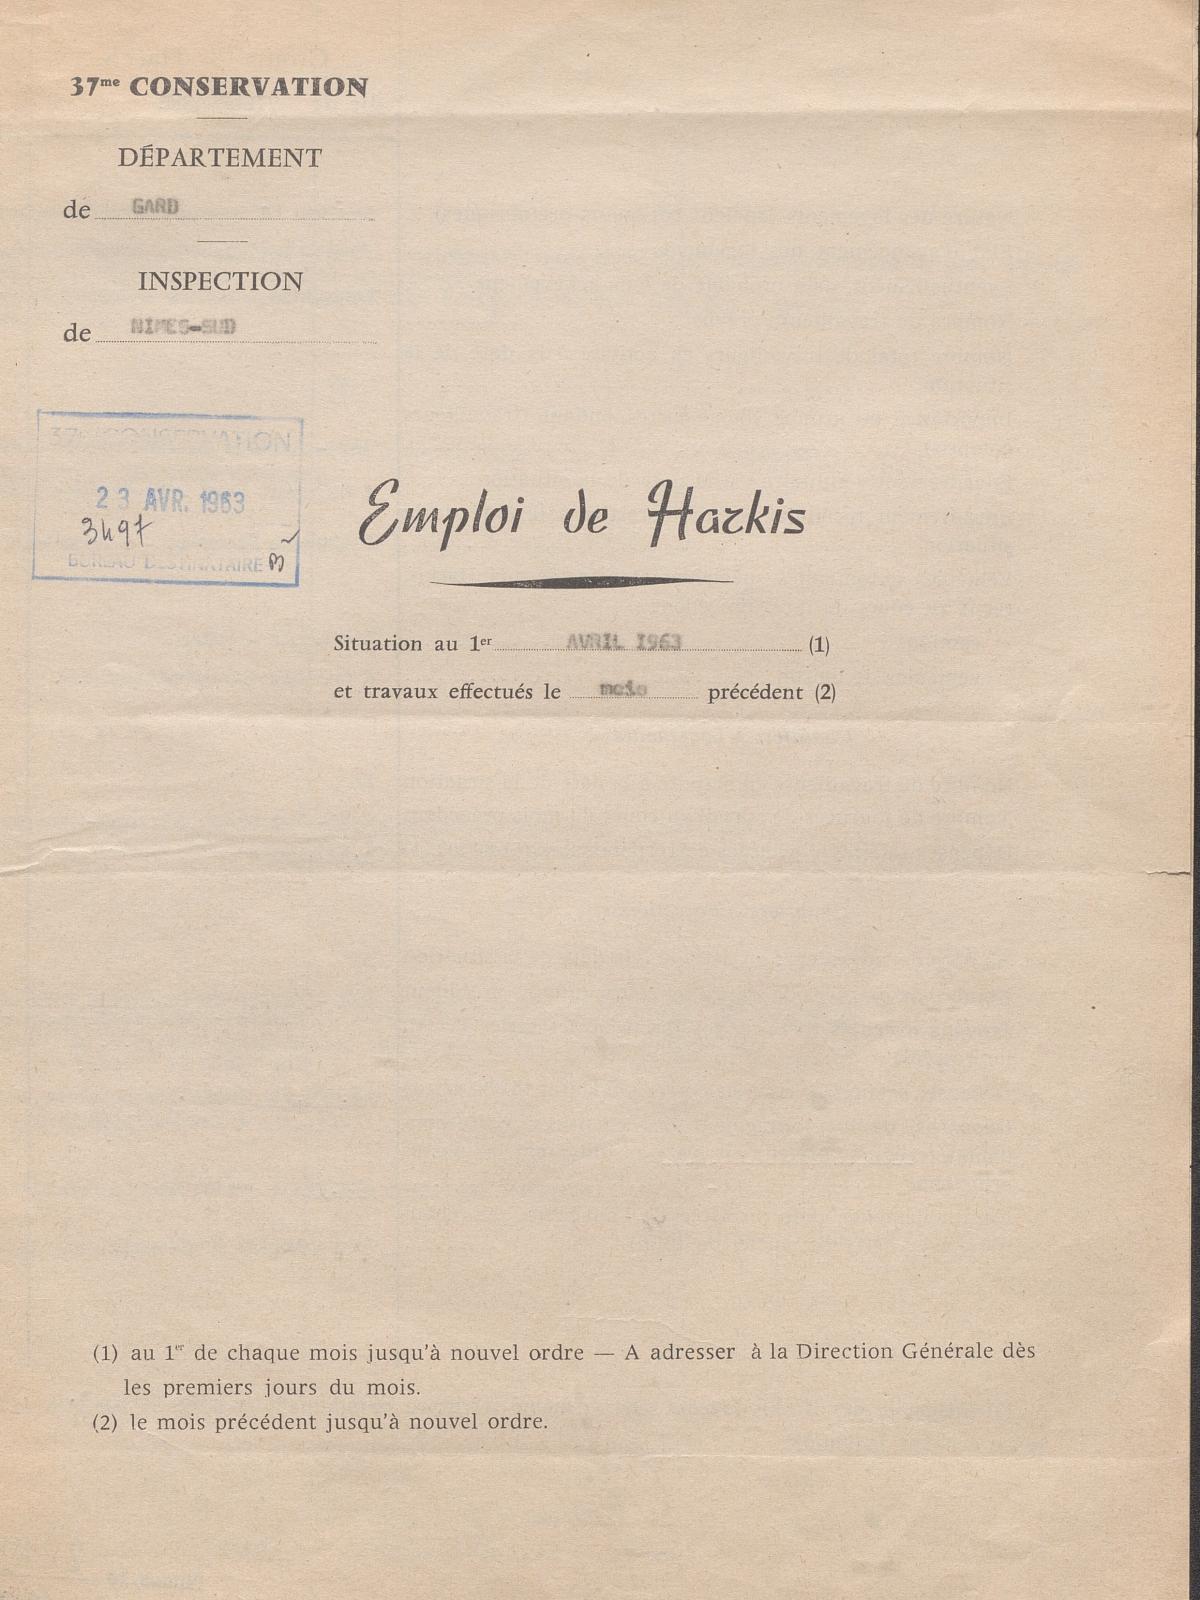 Illustration 16 : Emploi de Harkis ; situation au 1er avril 1963 et travaux effectués le mois précédent (Archives du Gard 7W387)